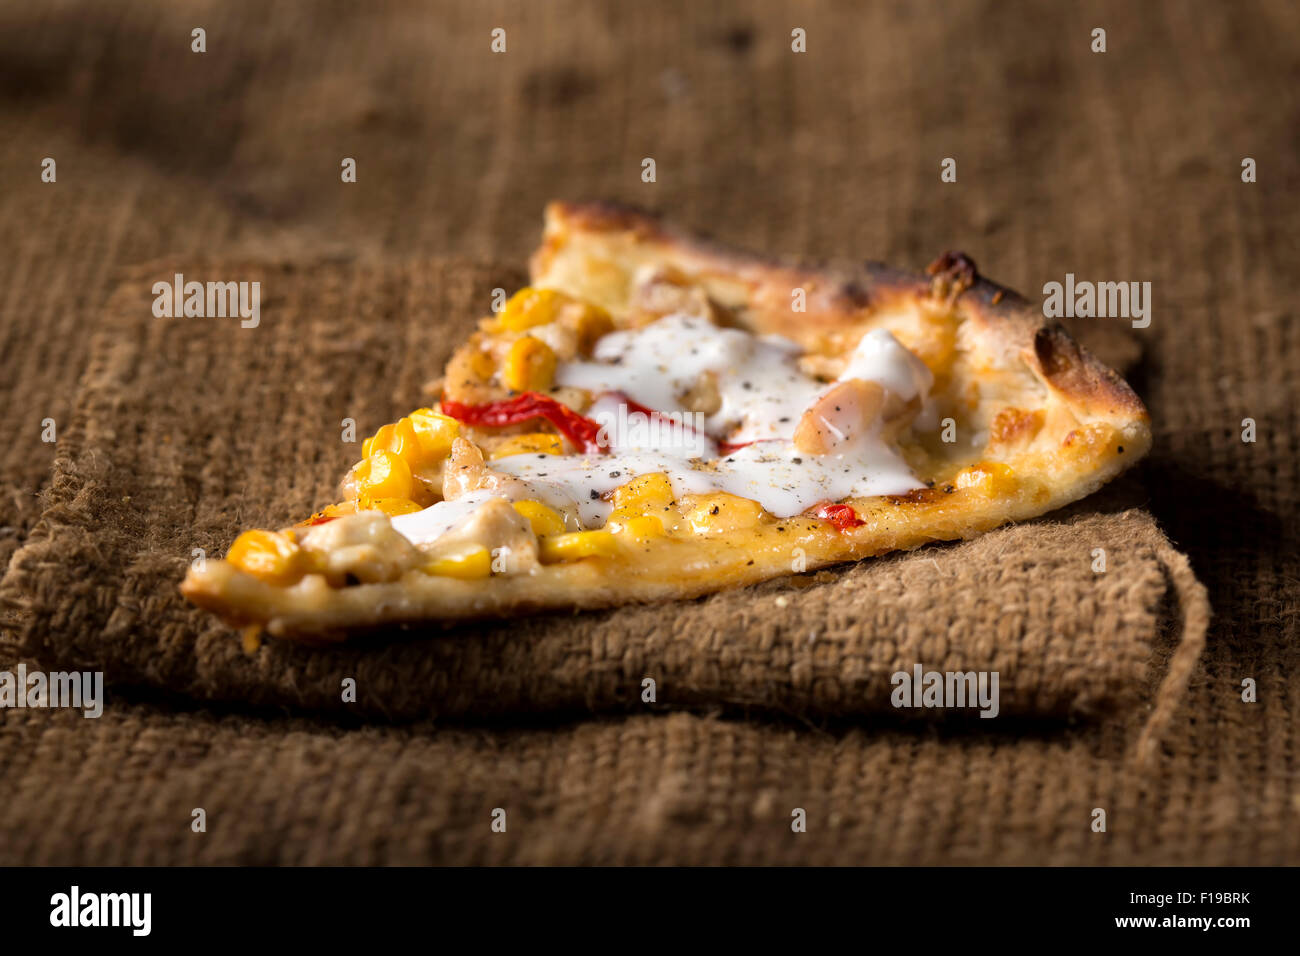 Une tranche de pizza Al Pollo sur bois avec tomato Banque D'Images